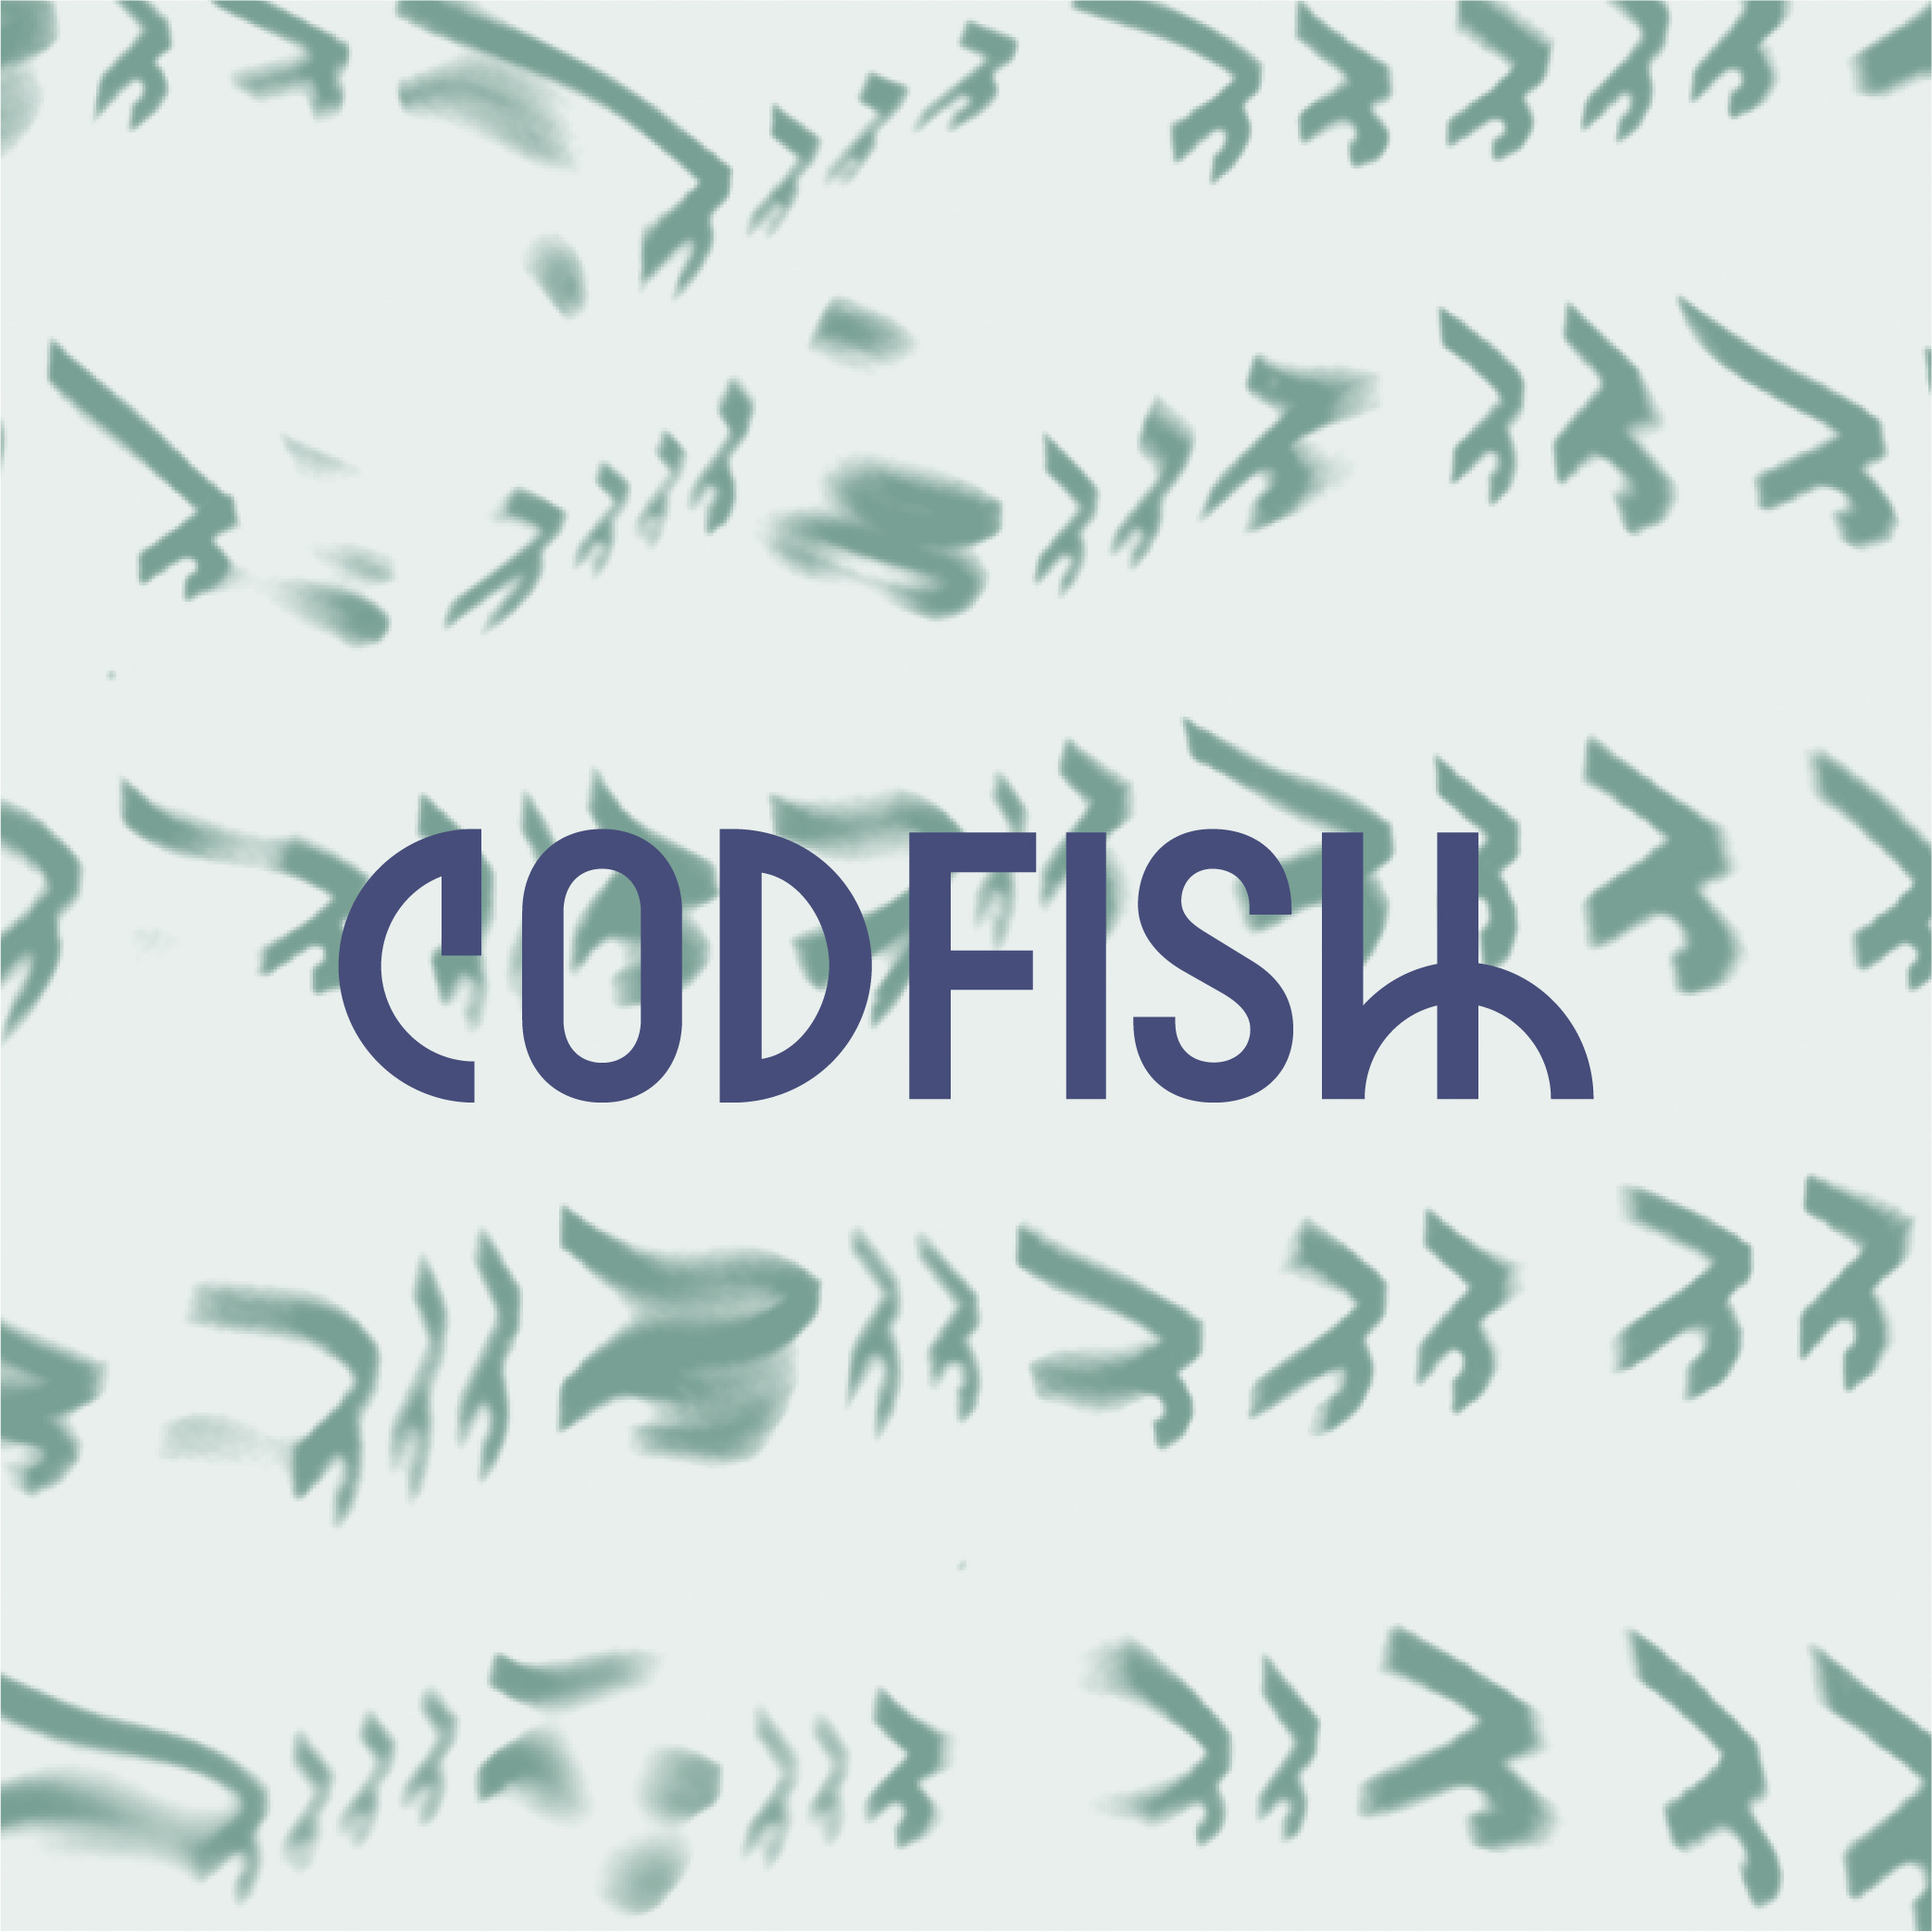 Fish image